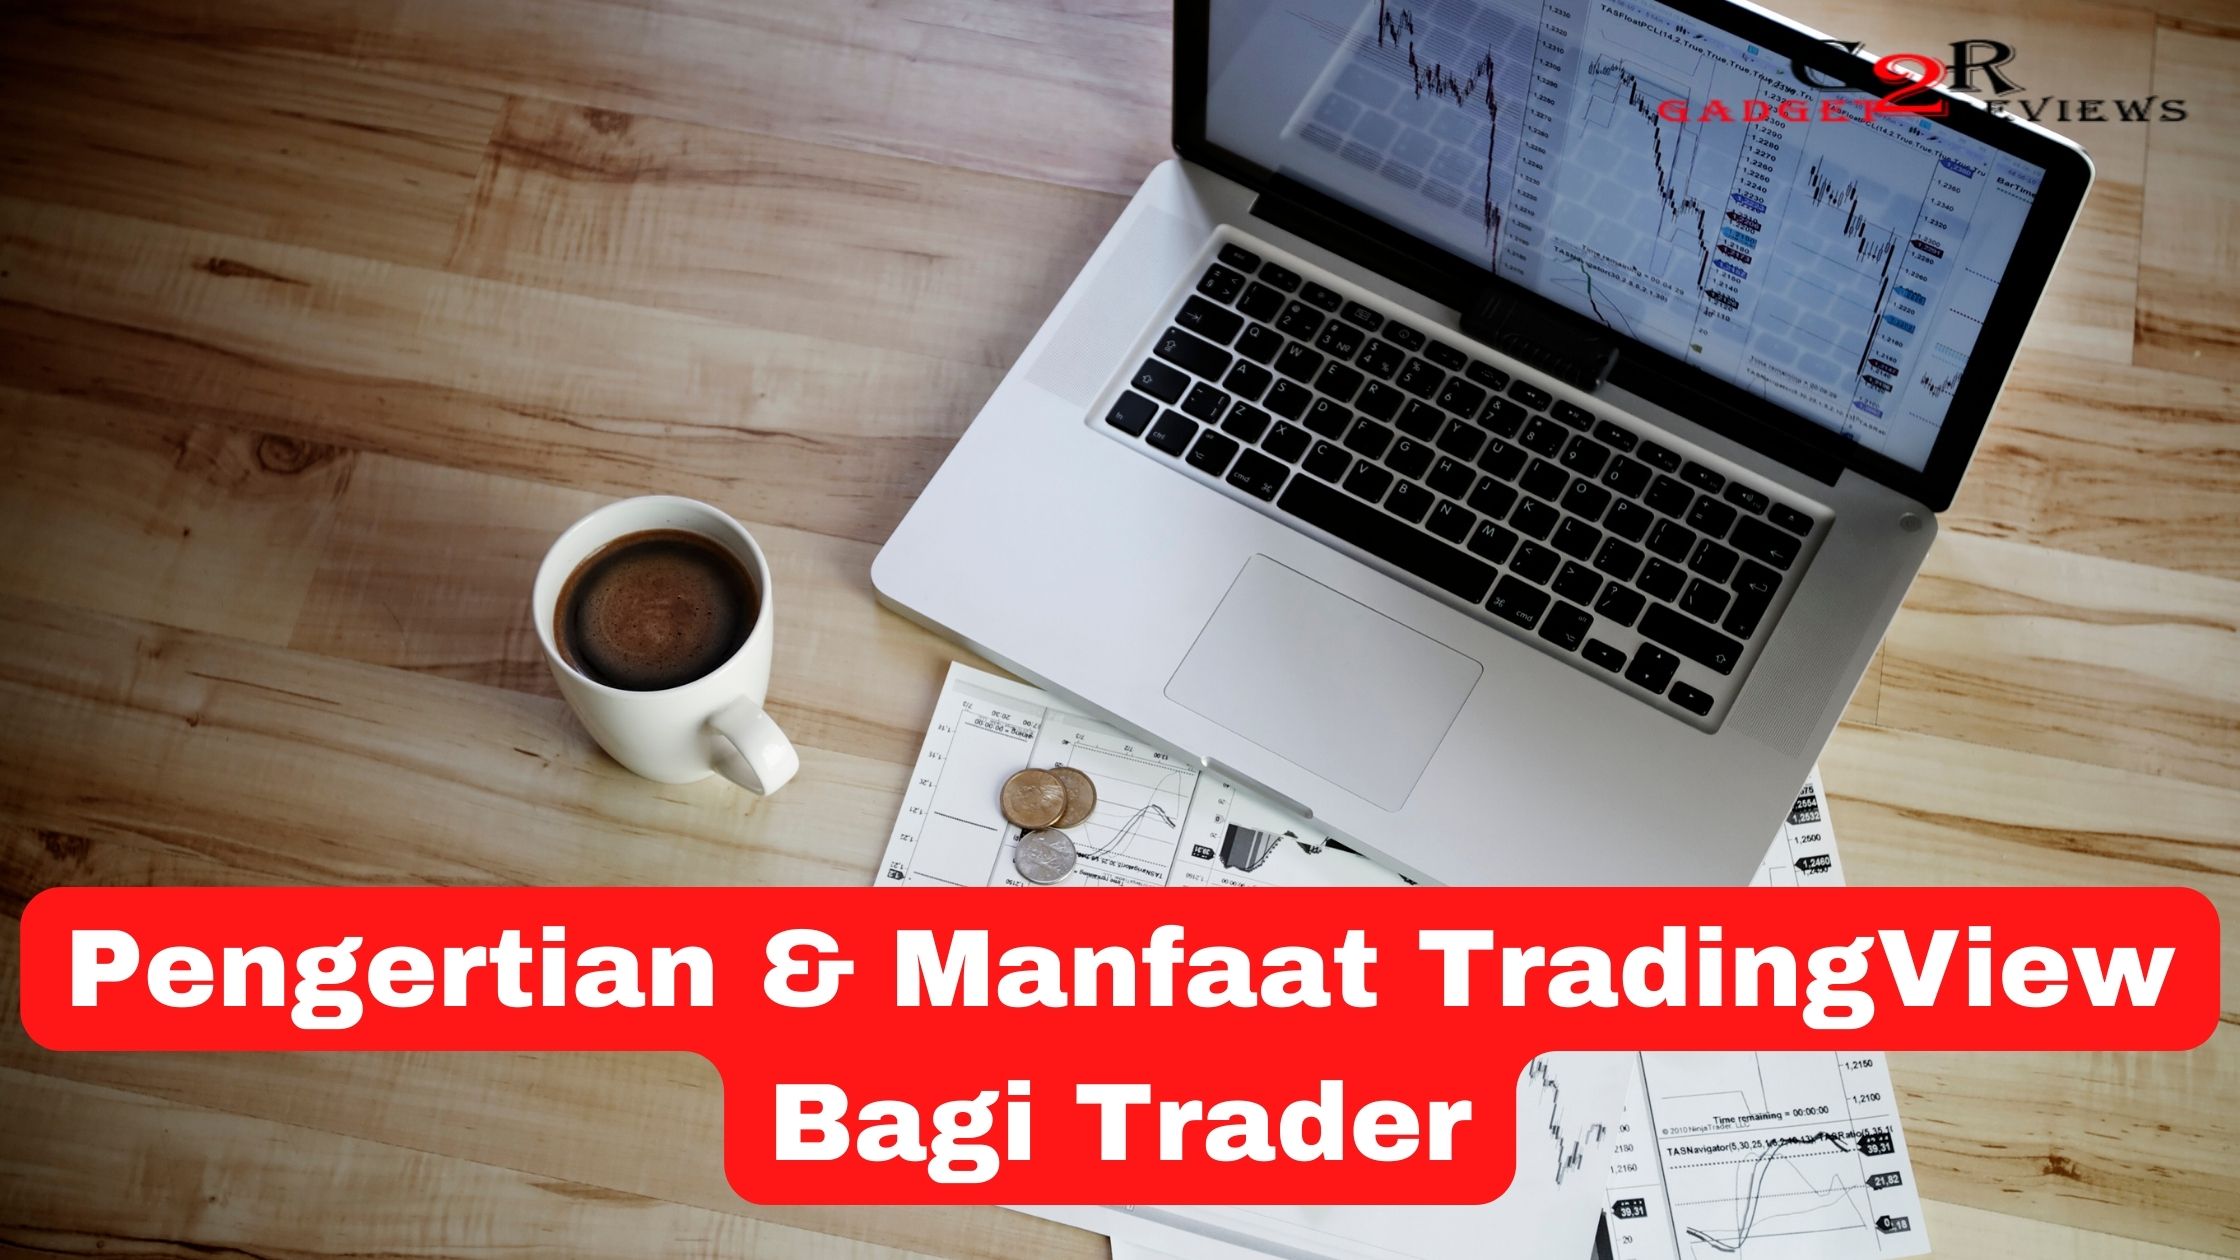 Pengertian dan Manfaat TradingView Bagi Trader Perlu Diketahui